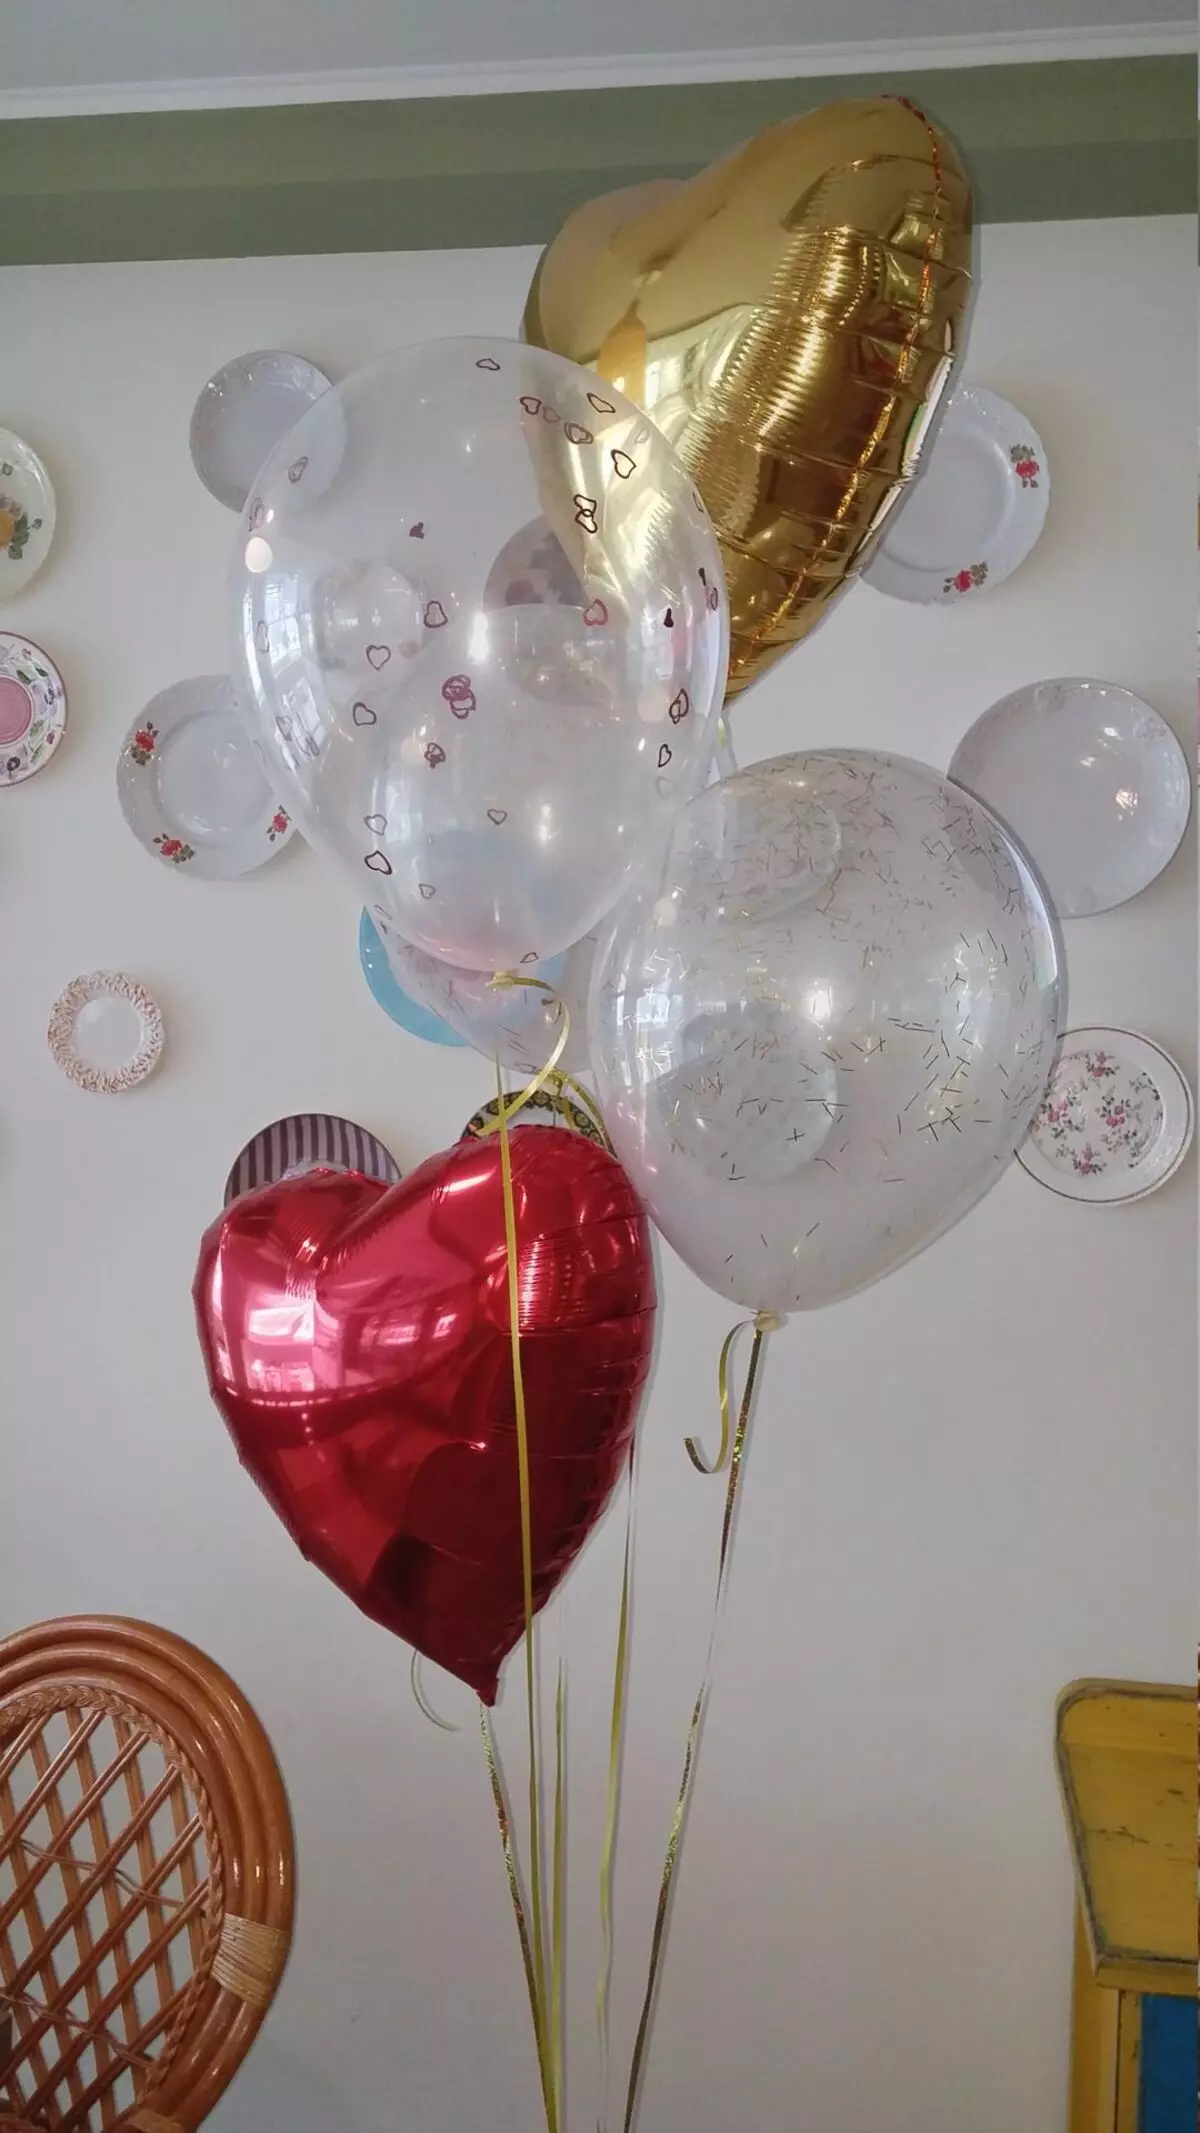 Ma balloon - chinthu chofunikira kwambiri pofika pa February 14